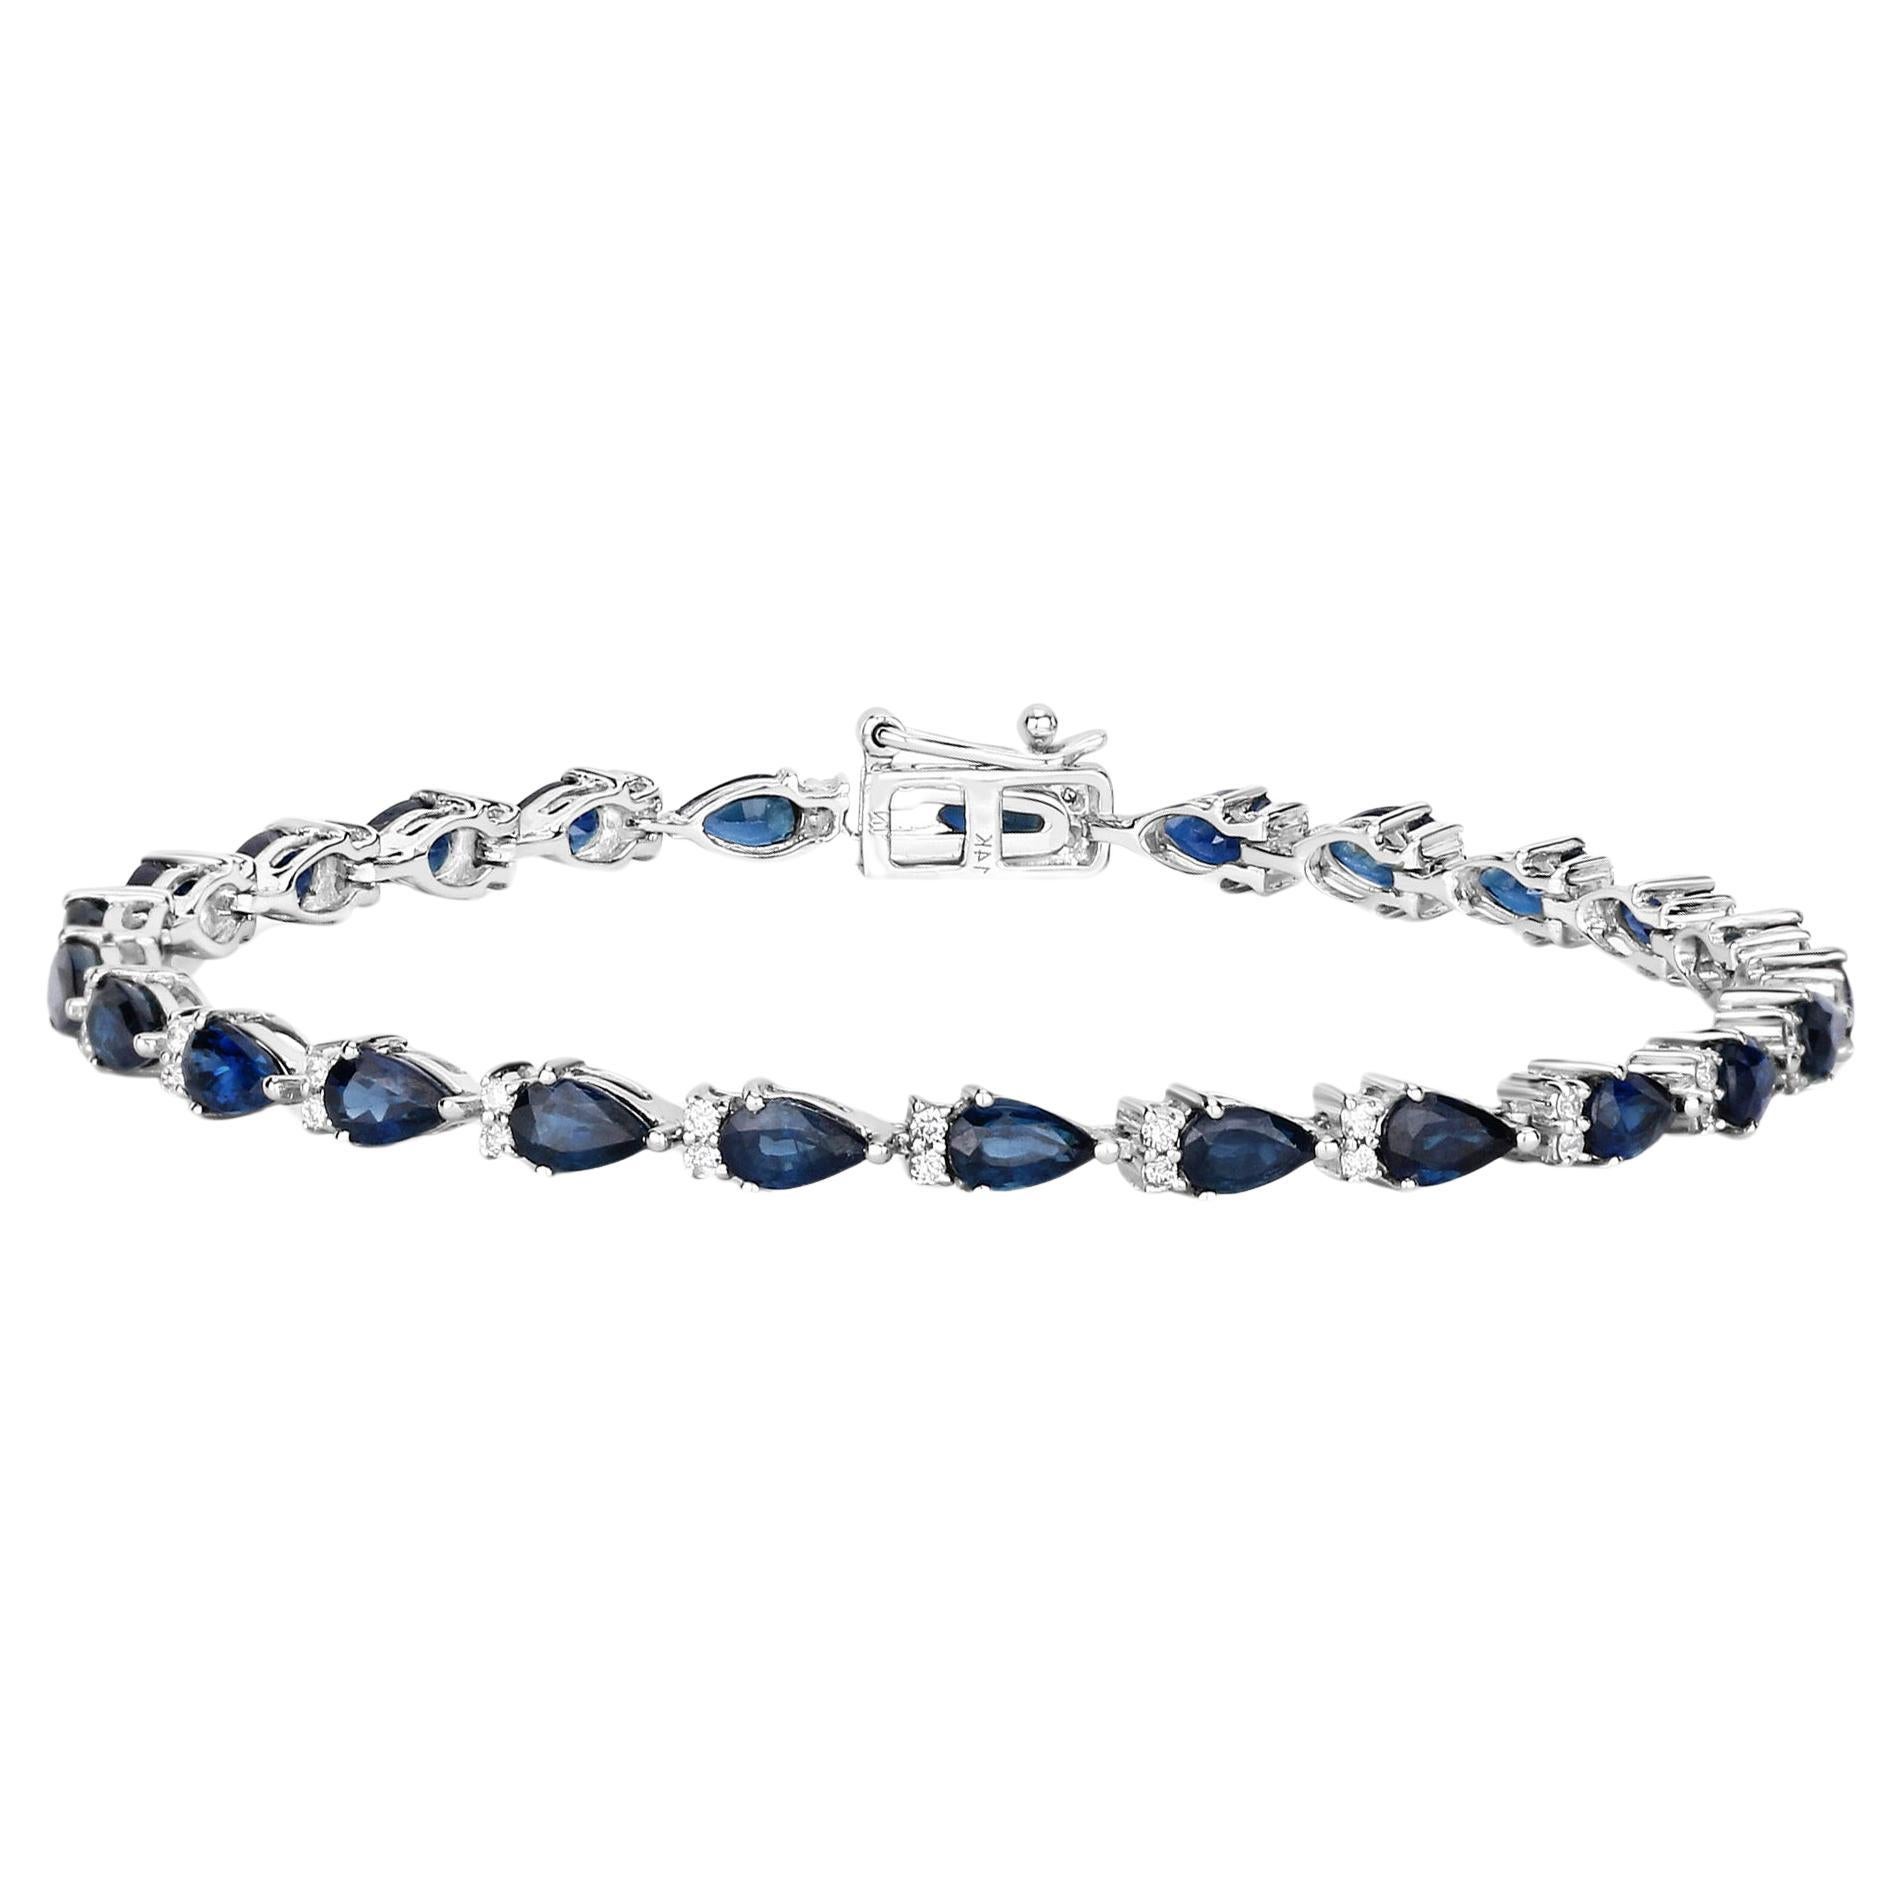 Bracelet tennis à maillons en or blanc 14 carats avec saphir bleu taille poire et diamants 5,40 carats